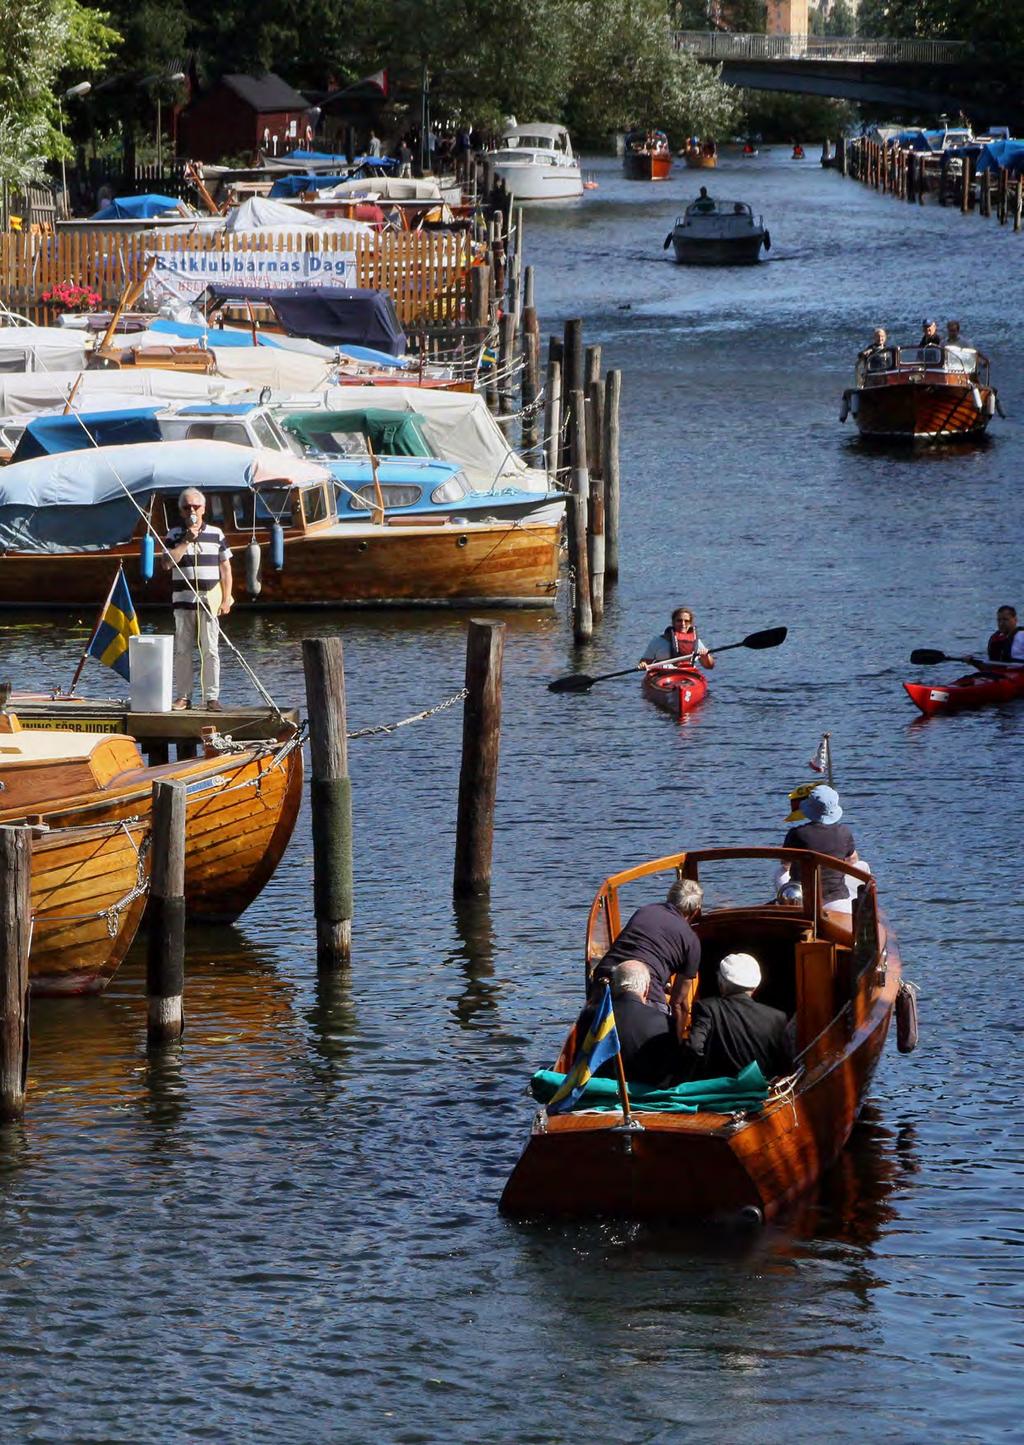 1 000 BÅTKLUBBAR I SVERIGE I Sverige finns det drygt 1 000 båtklubbar. De har tillsammans 250 000 medlemmar. Båtklubbarna finns längs hela vår kust, insjöar och i vattendrag.